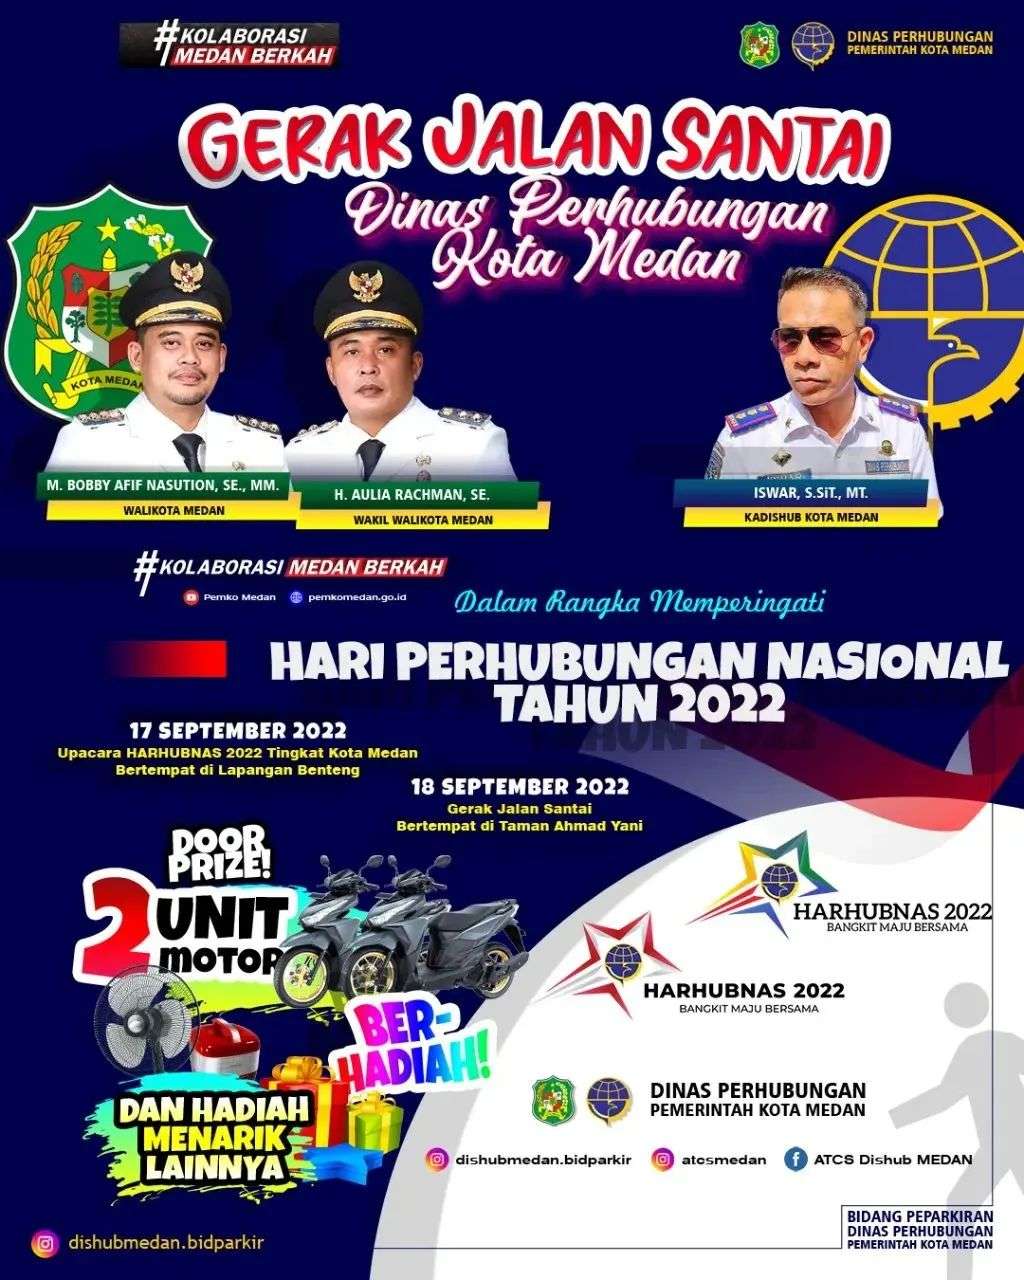 Gerak Jalan Santai Dinas Perhubungan Kota Medan, Menyambut HARHUBNAS 2022. Perayaan puncak di laksanakan 18 September 2022.